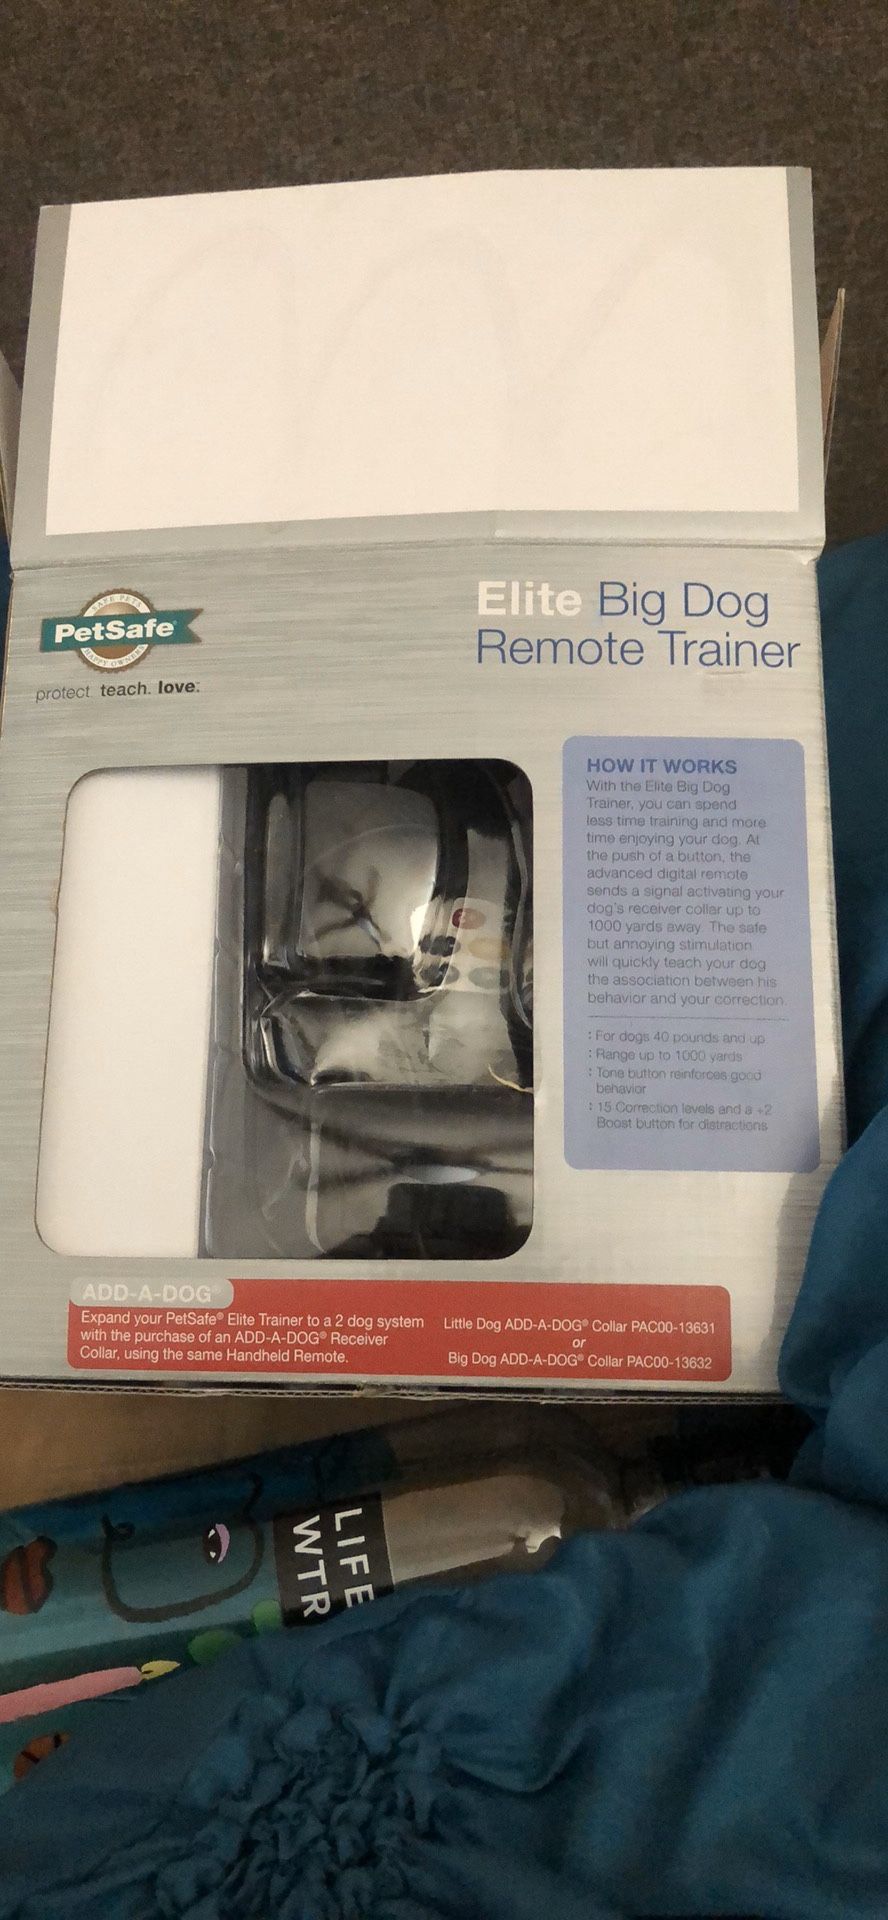 Pet safe elite big dog remote trainer